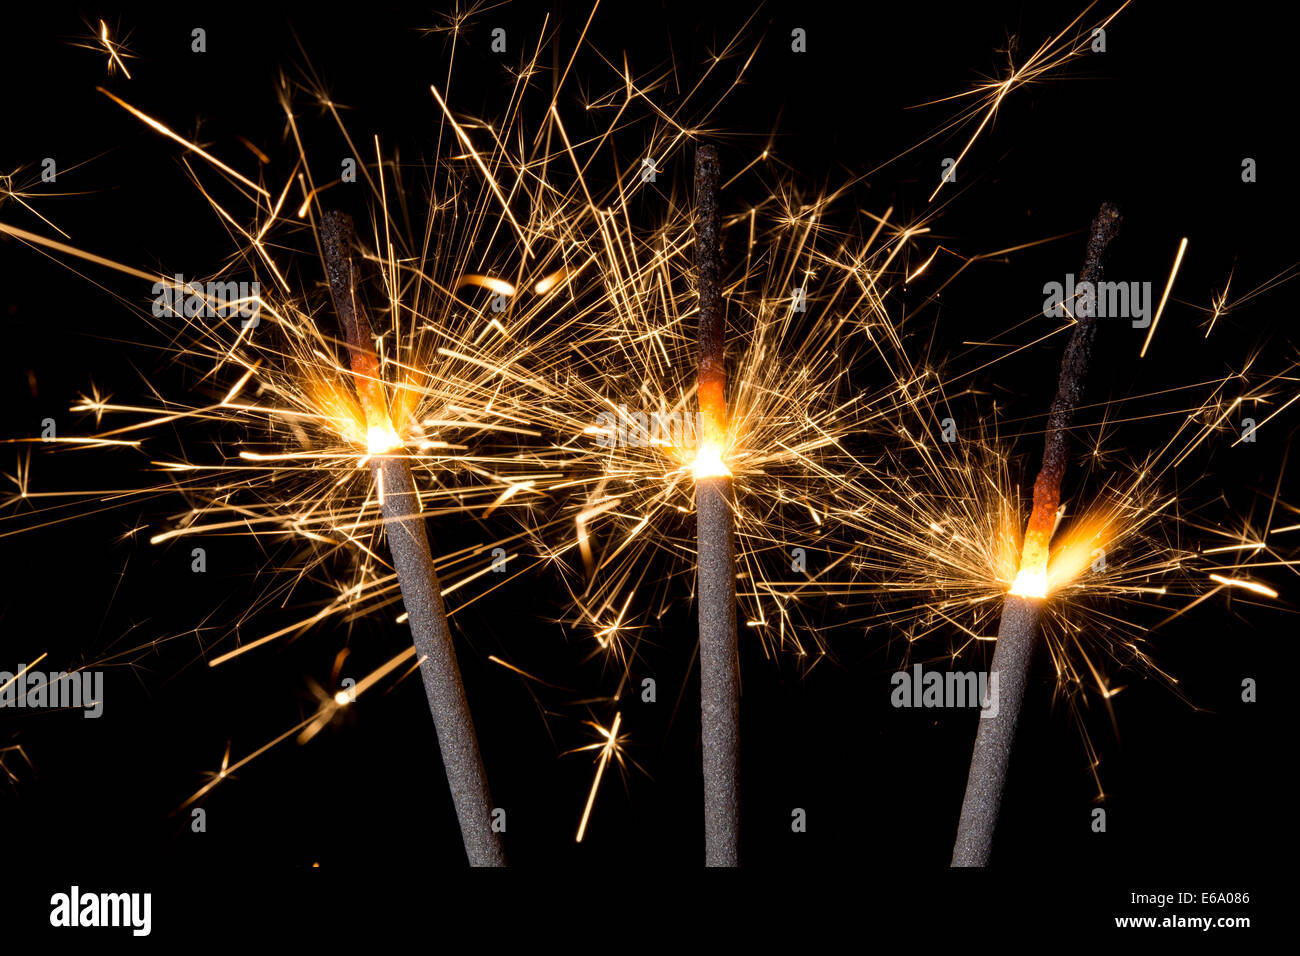 Drei brennende Wunderkerzen gold Feuerwerk emittierende Funken vor einem schwarzen Hintergrund. Stockfoto